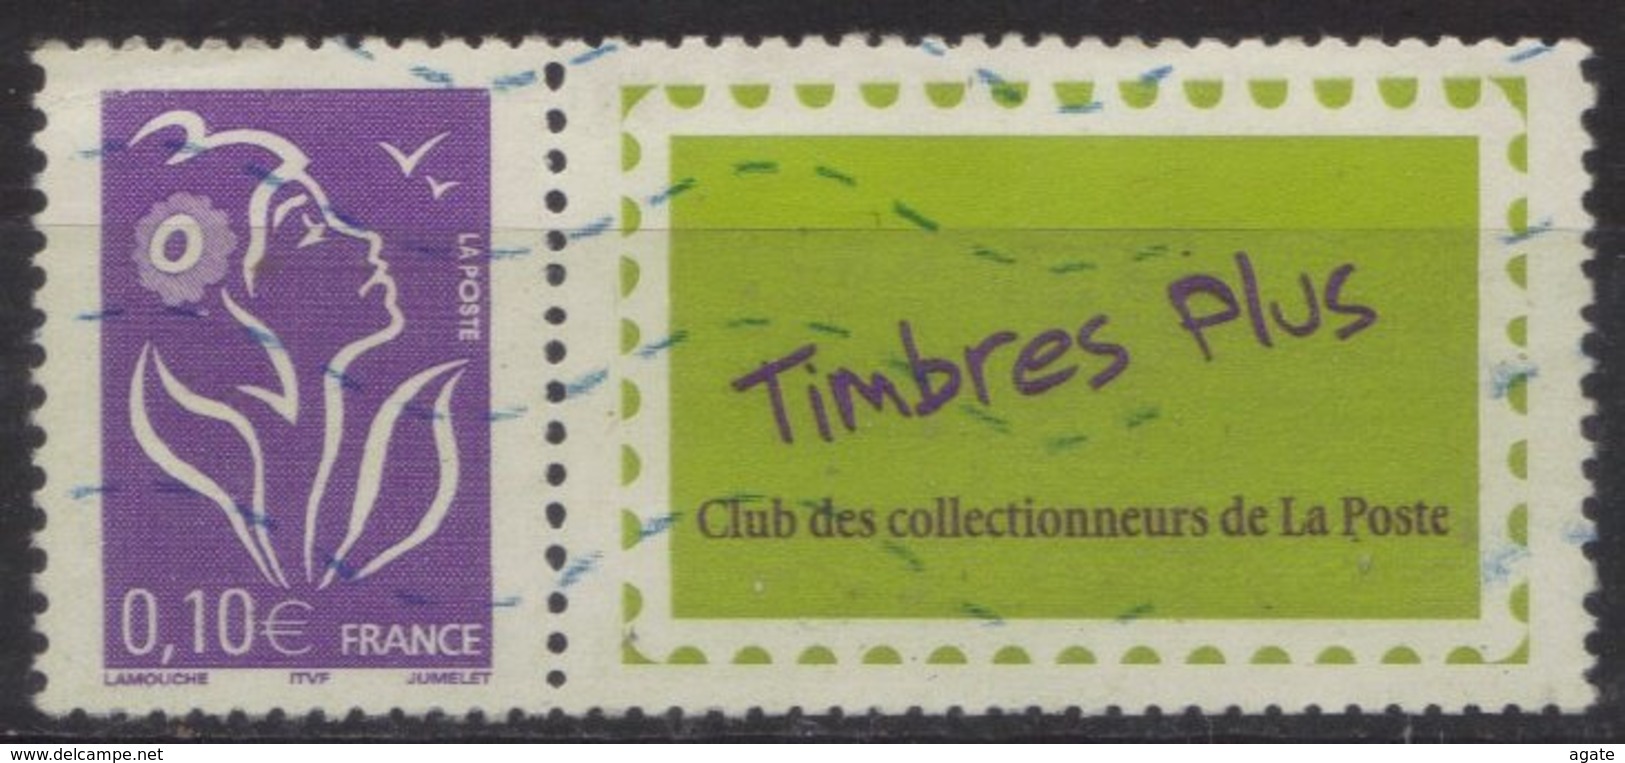 3916A - Lamouche 0.10 Personnalisé Timbres Plus Oblitéré - Used Stamps